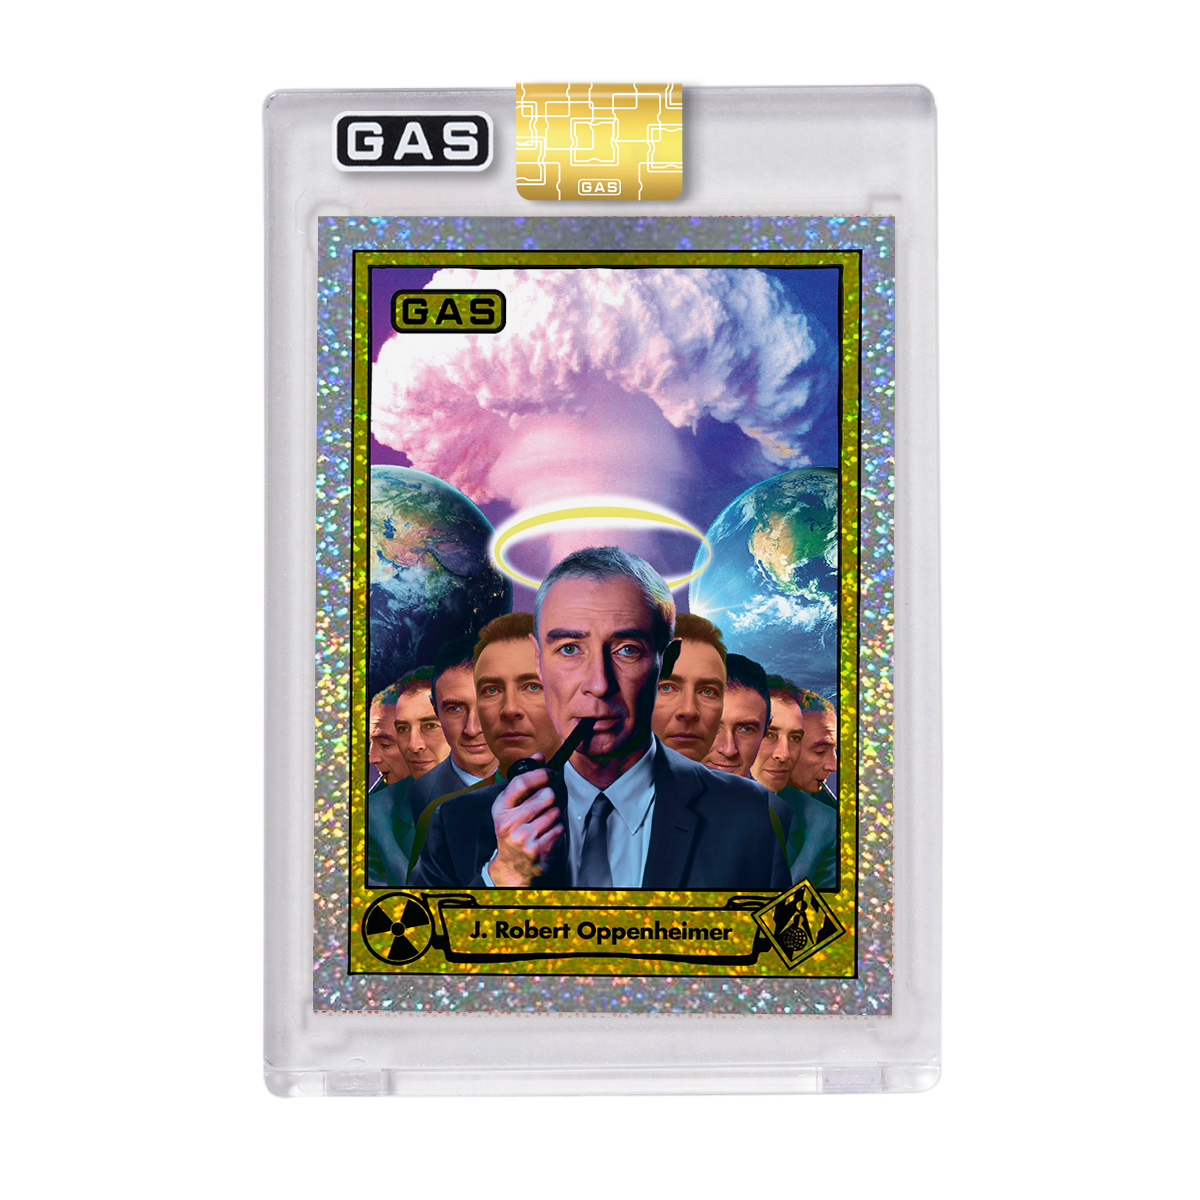 GAS Series 3 #22 J. Robert Oppenheimer Open Edition Trading Card